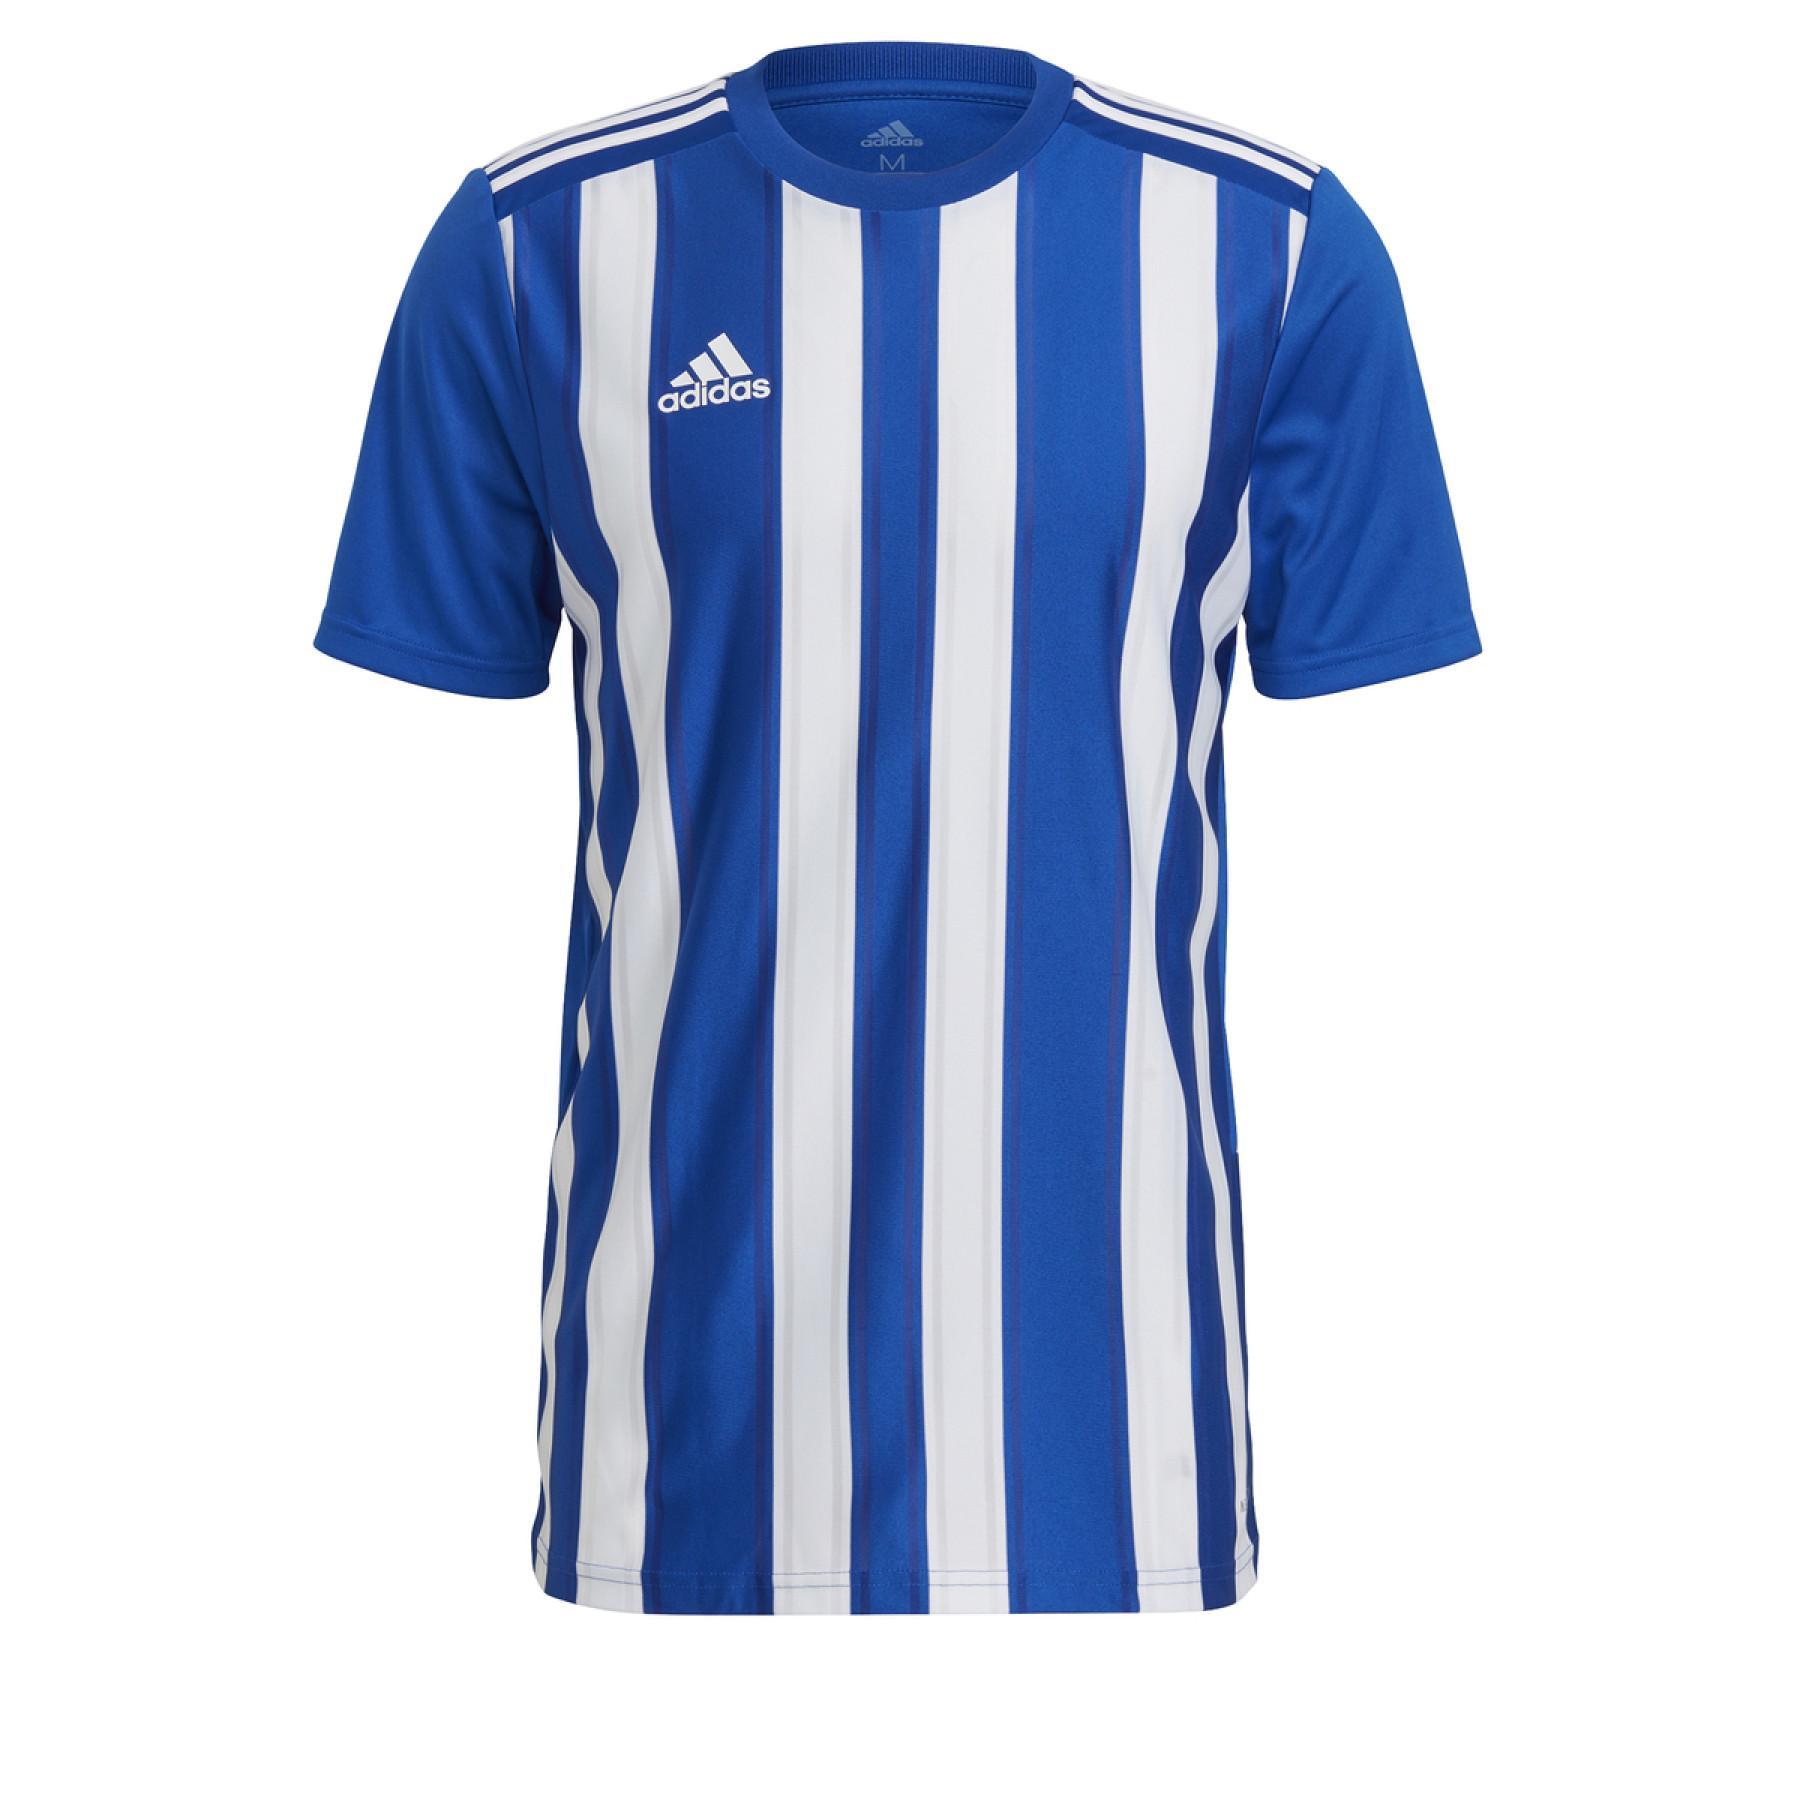 Jersey adidas Striped 21 - Camisetas Equipaciones para clubs Fútbol